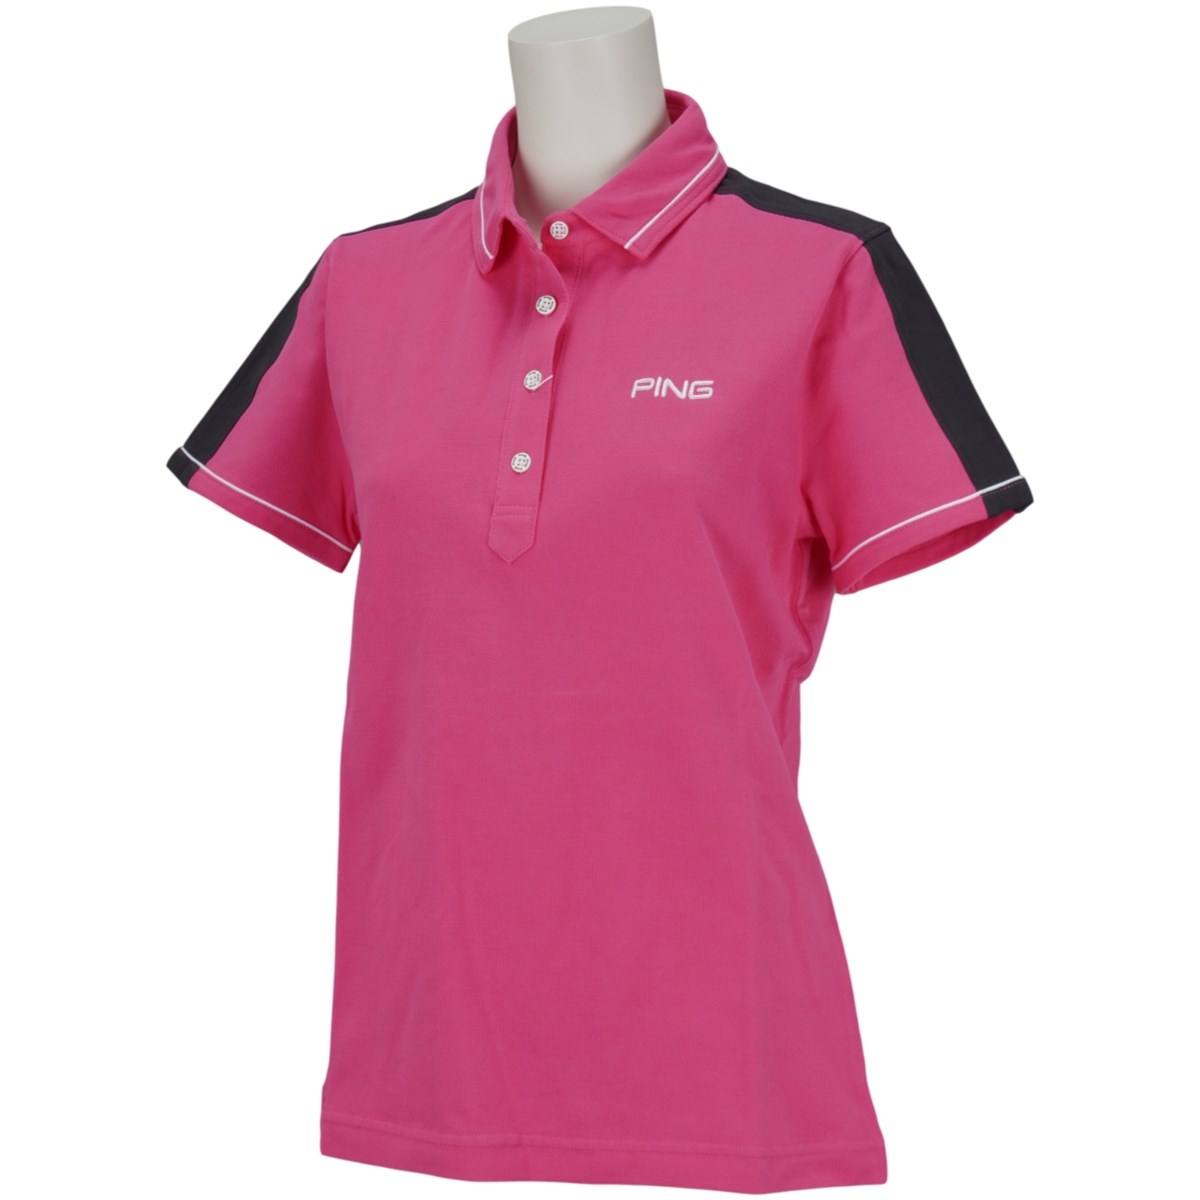 [アウトレット] [在庫限りのお買い得商品] ピン PING 半袖ポロシャツ ピンク 090 レディース ゴルフウェア